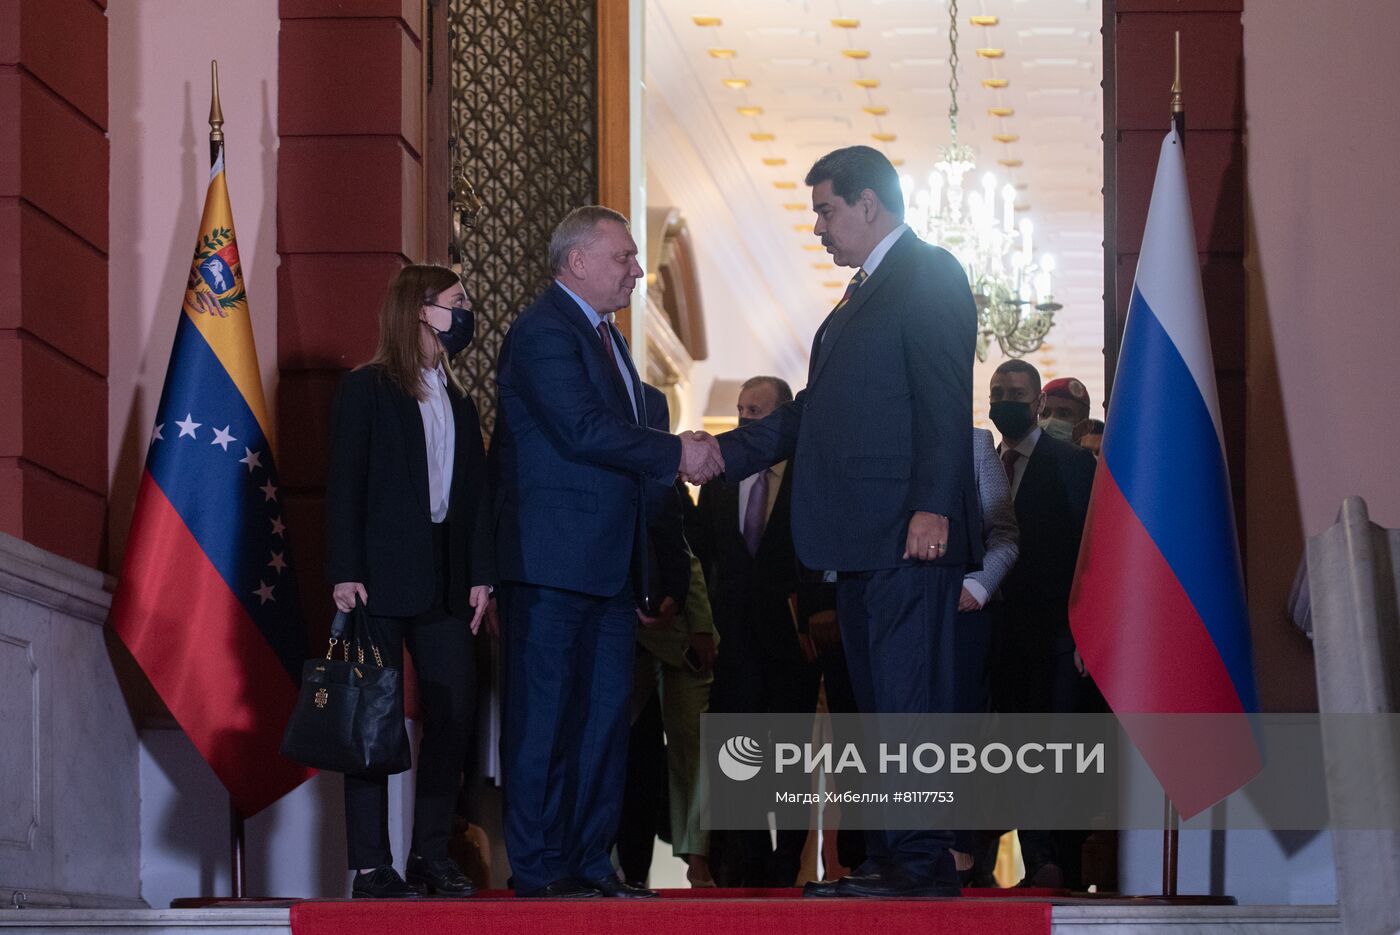 Вице-премьер Ю. Борисов встретился с президентом Венесуэлы Н. Мадуро